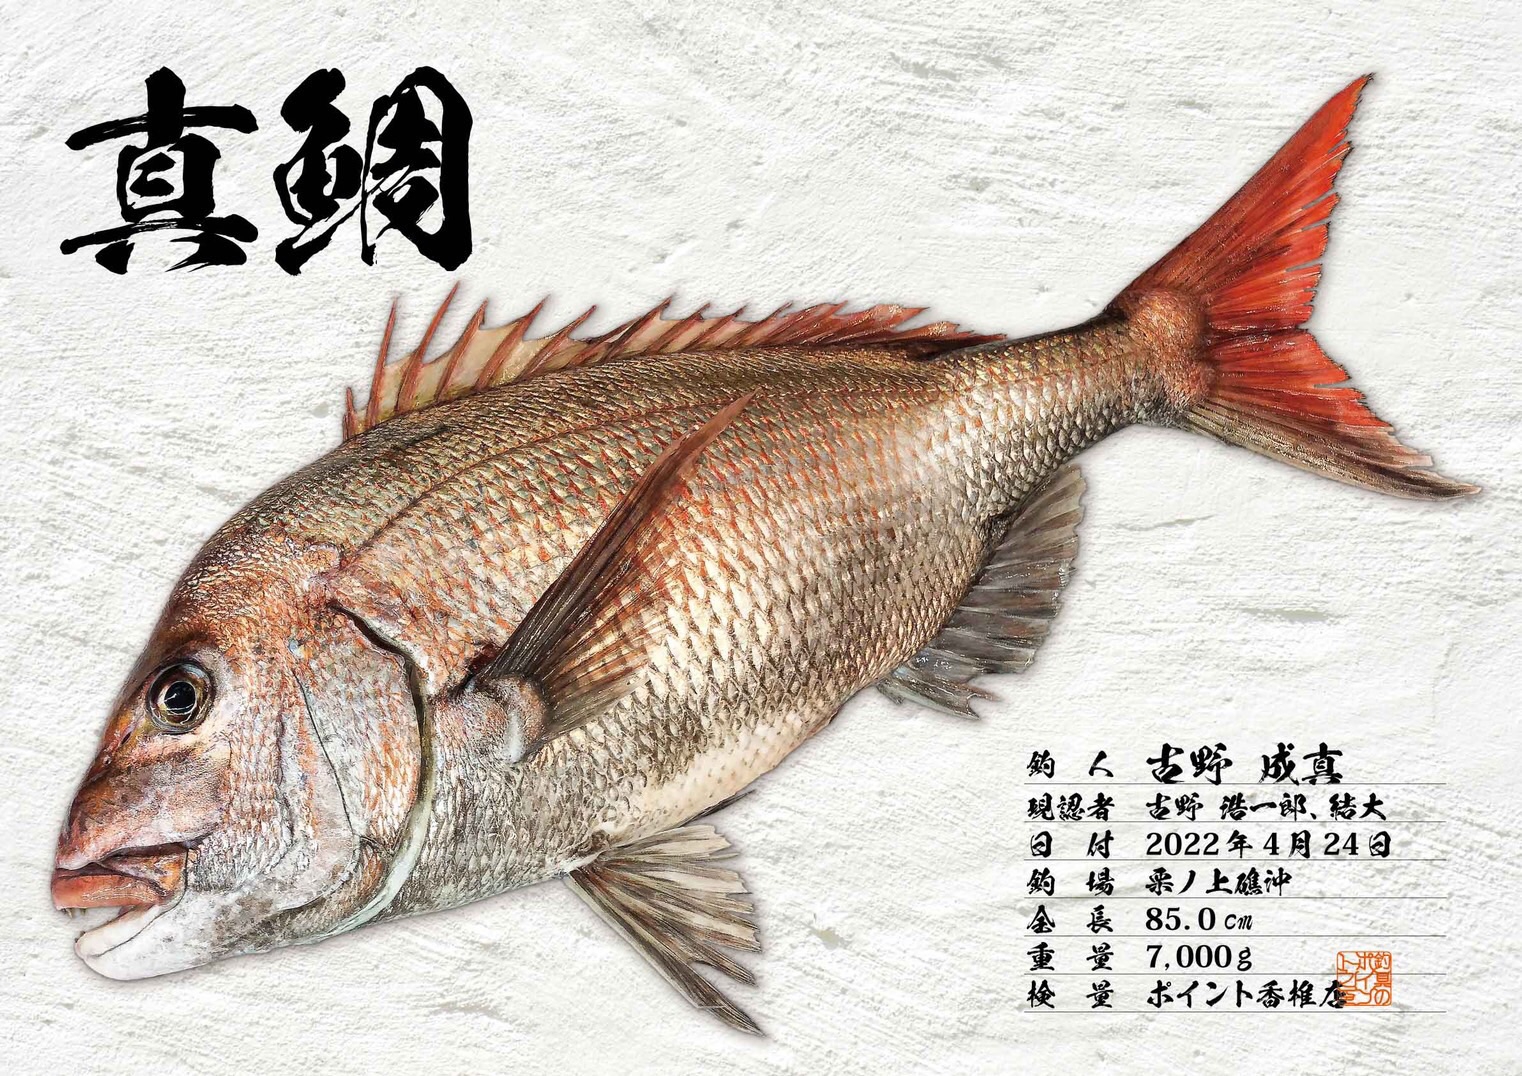 真鯛記録保持者 小学6年生 85cm デジタル魚拓 | 遊漁船カナト